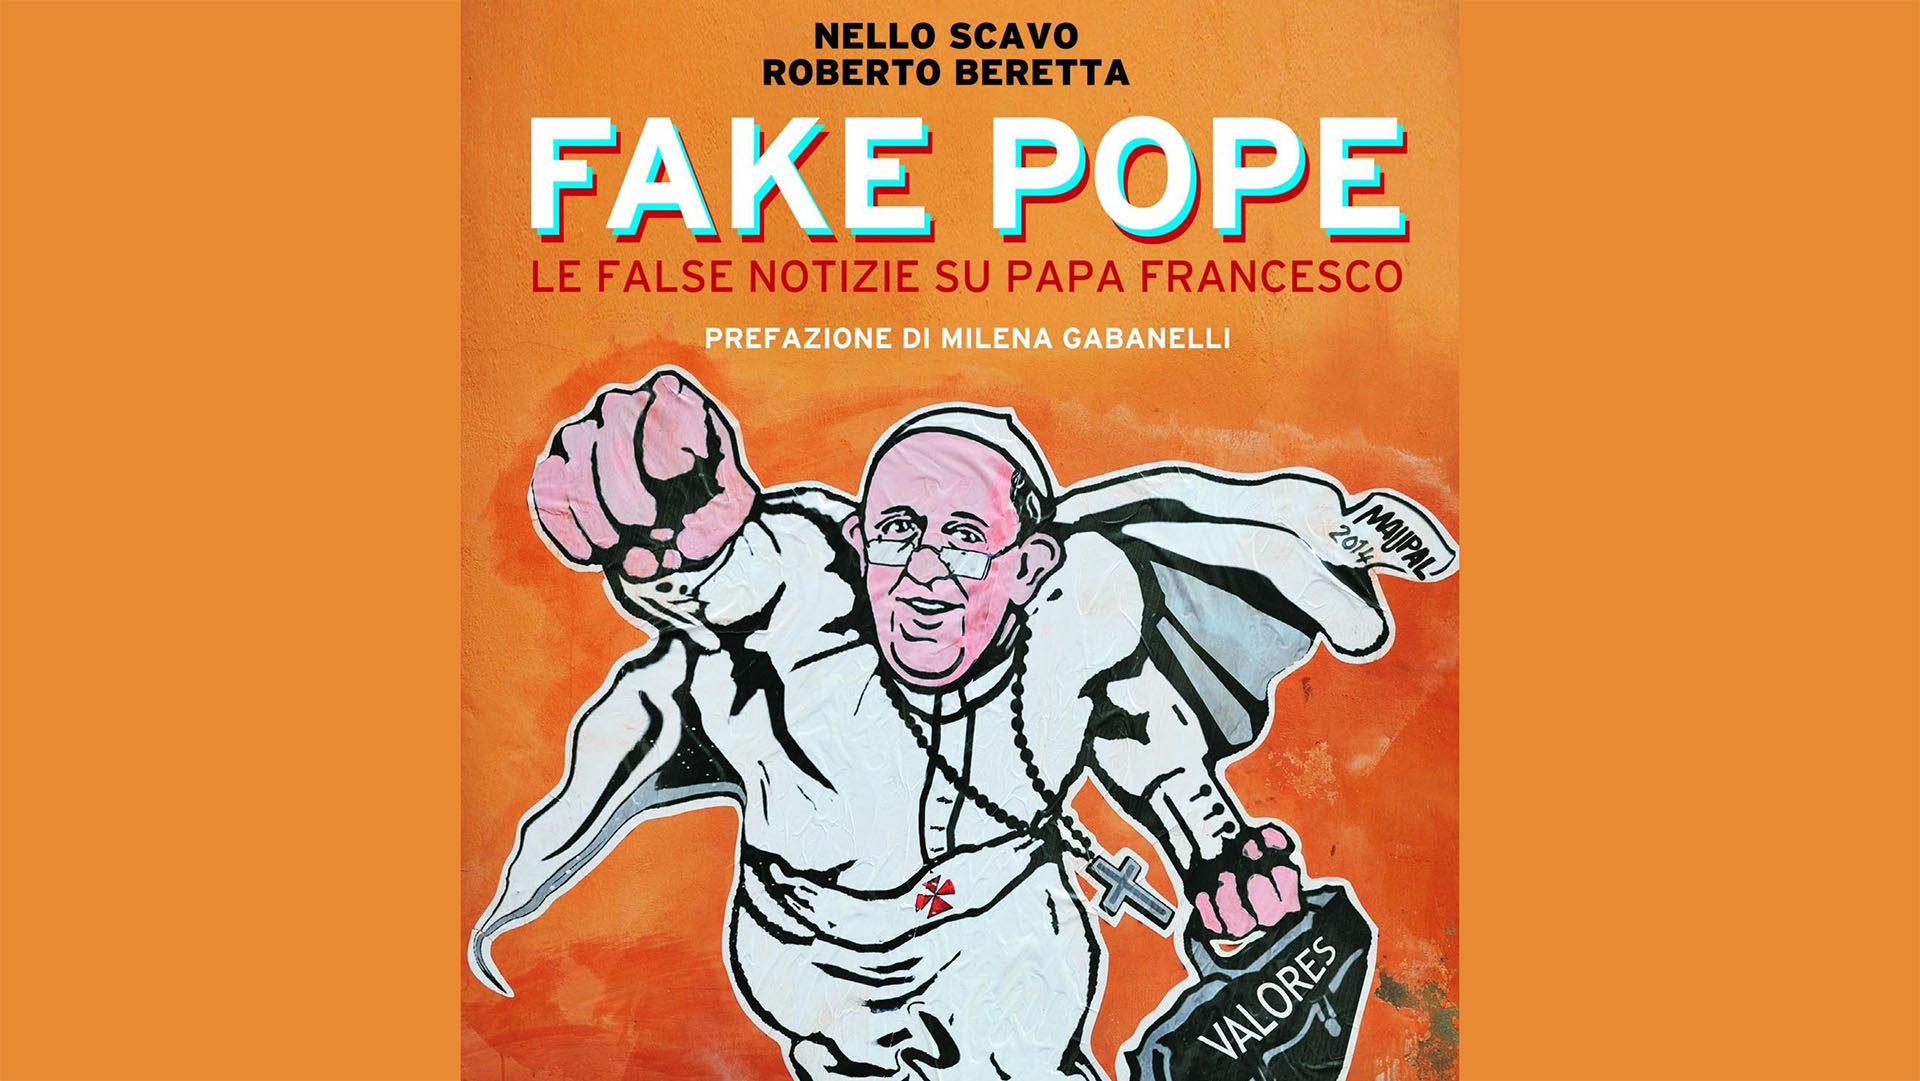 'Fake Pope', le nouveau livre qui compile les 'fake news' sur le pape | http://www.lastampa.it